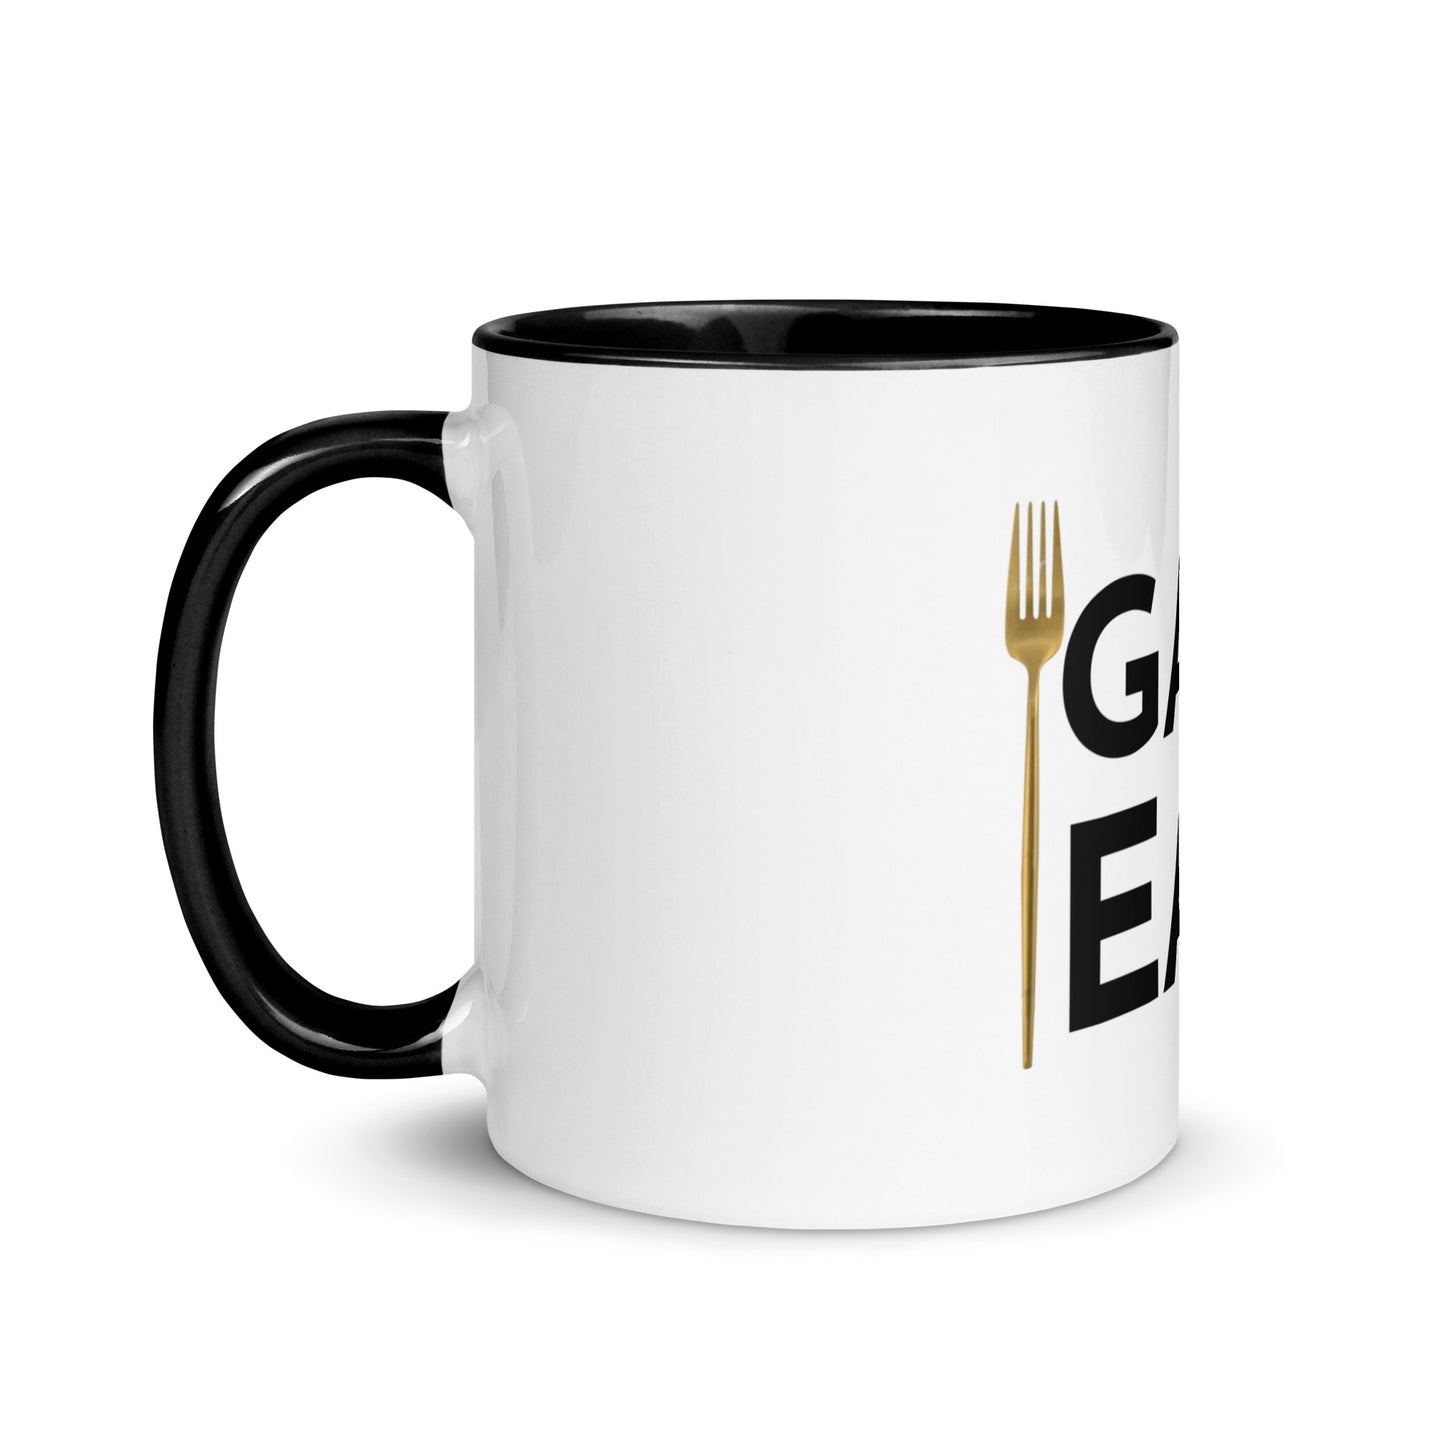 Gary Eats Mug